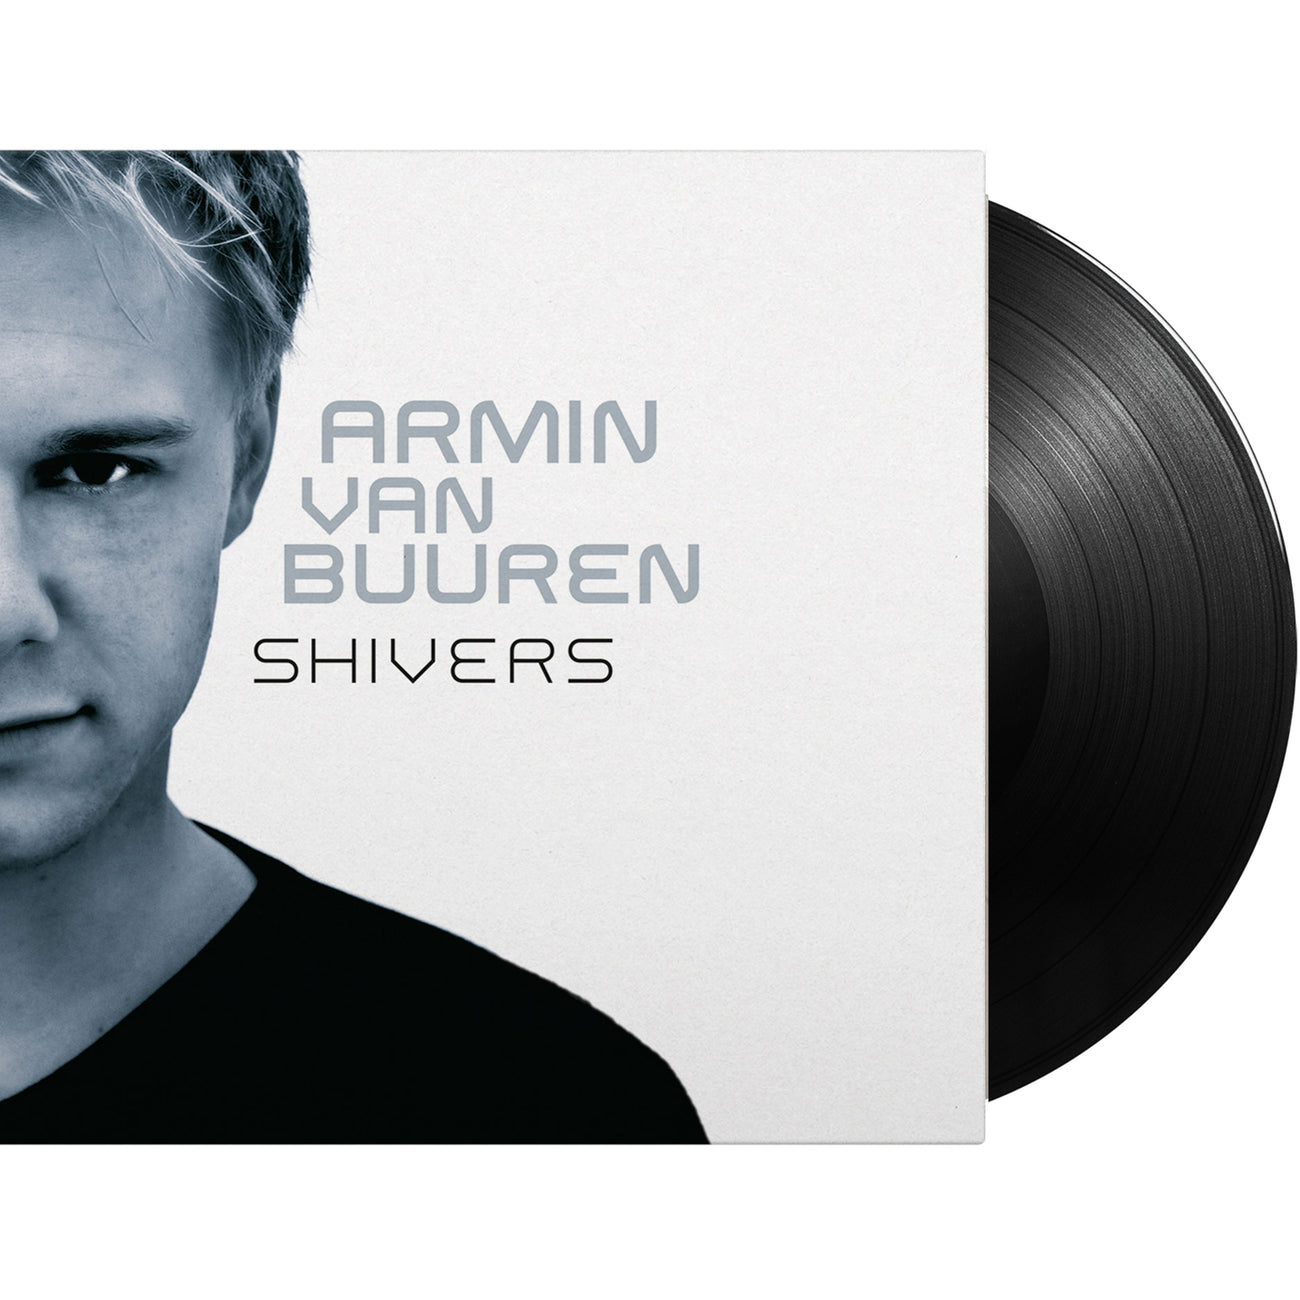 Armin van Buuren - Shivers (Vinyl)